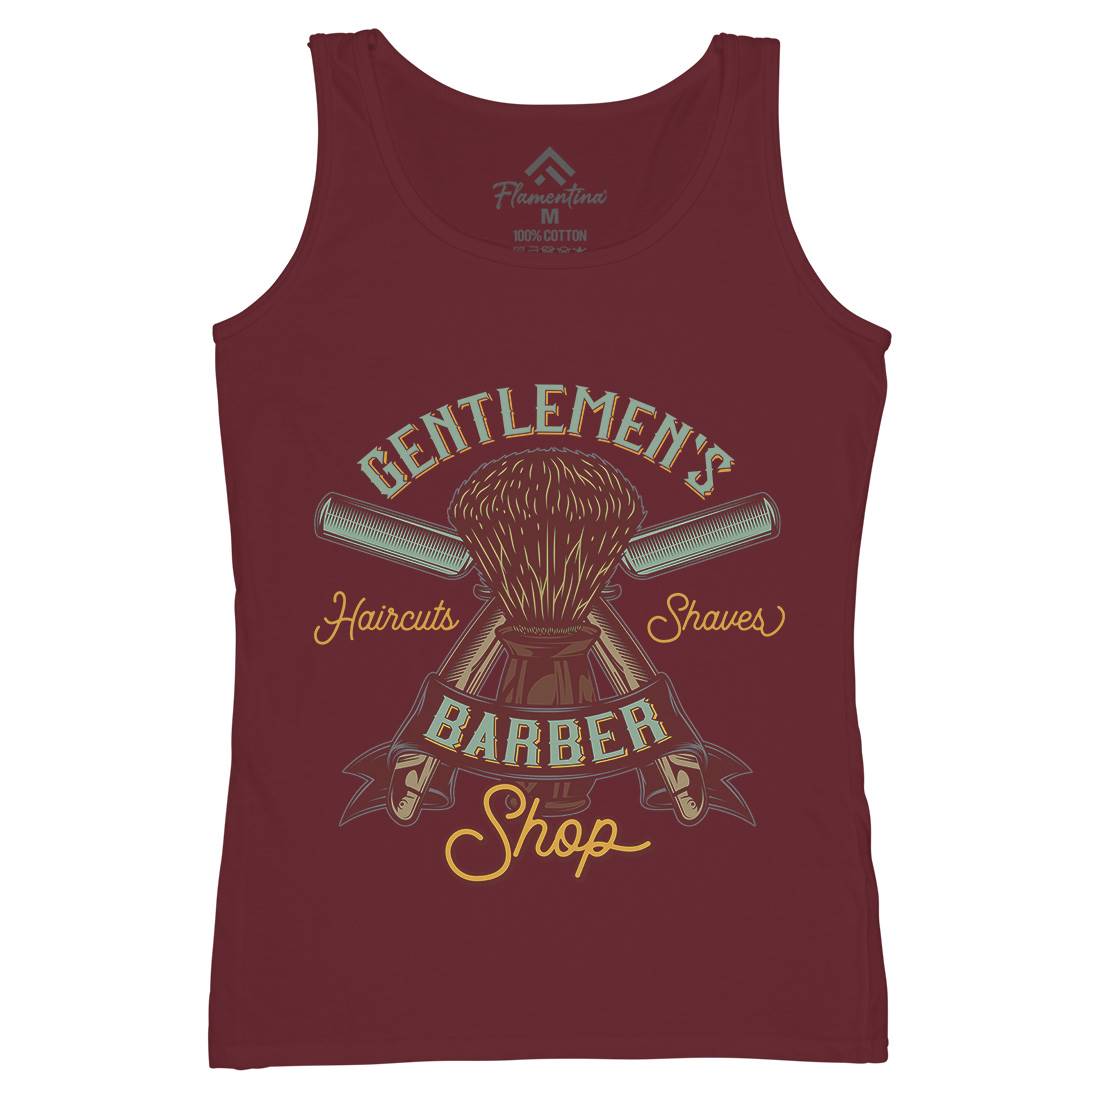 Gentlemens Shop Womens Organic Tank Top Vest Barber D935